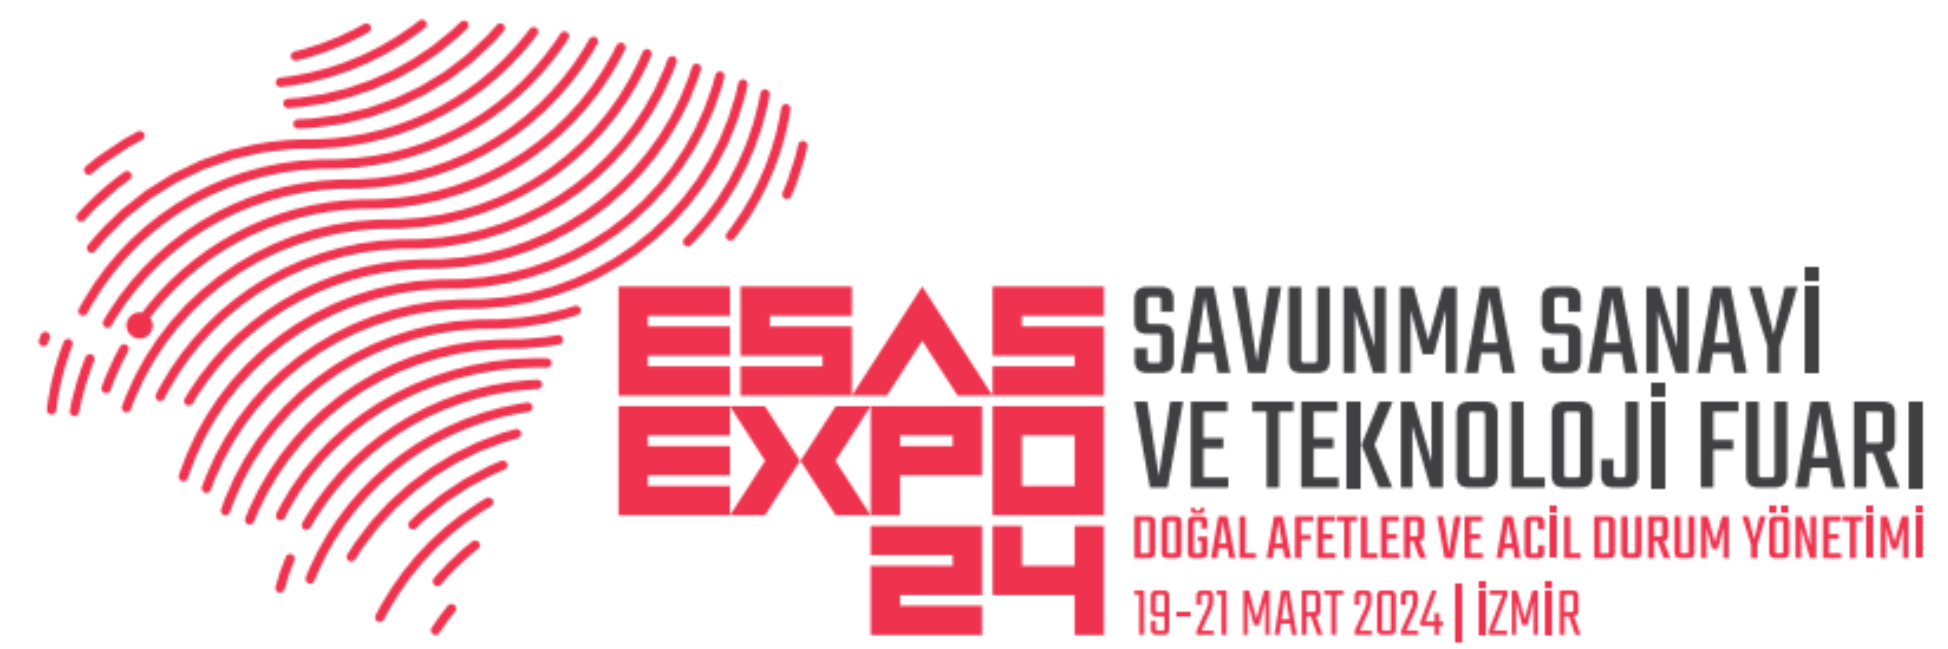 ESAS EXPO Ege Savunma Sanayi ve Tedarikçi Buluşmaları 18-20 Ocak 2023 İZMİR